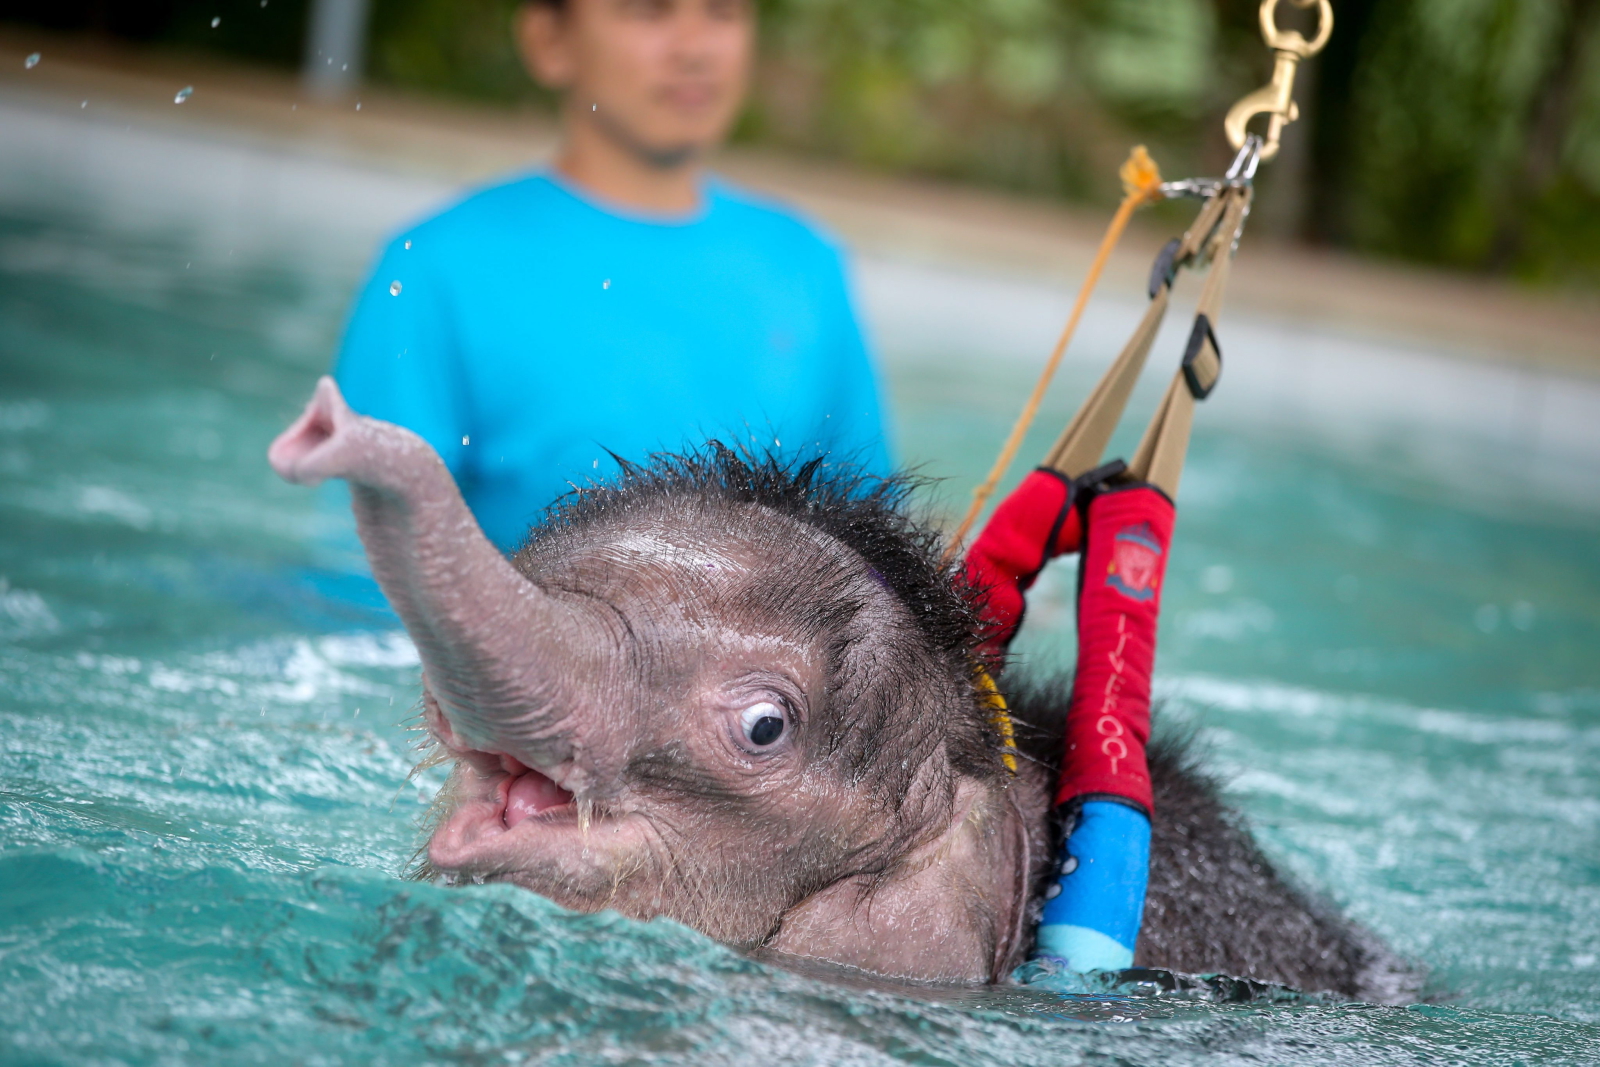 Tajlandia. Sześciomiesięczny słoń podczas rehabilitacji choreg nogi.
fot. EPA/DIEGO AZUBEL